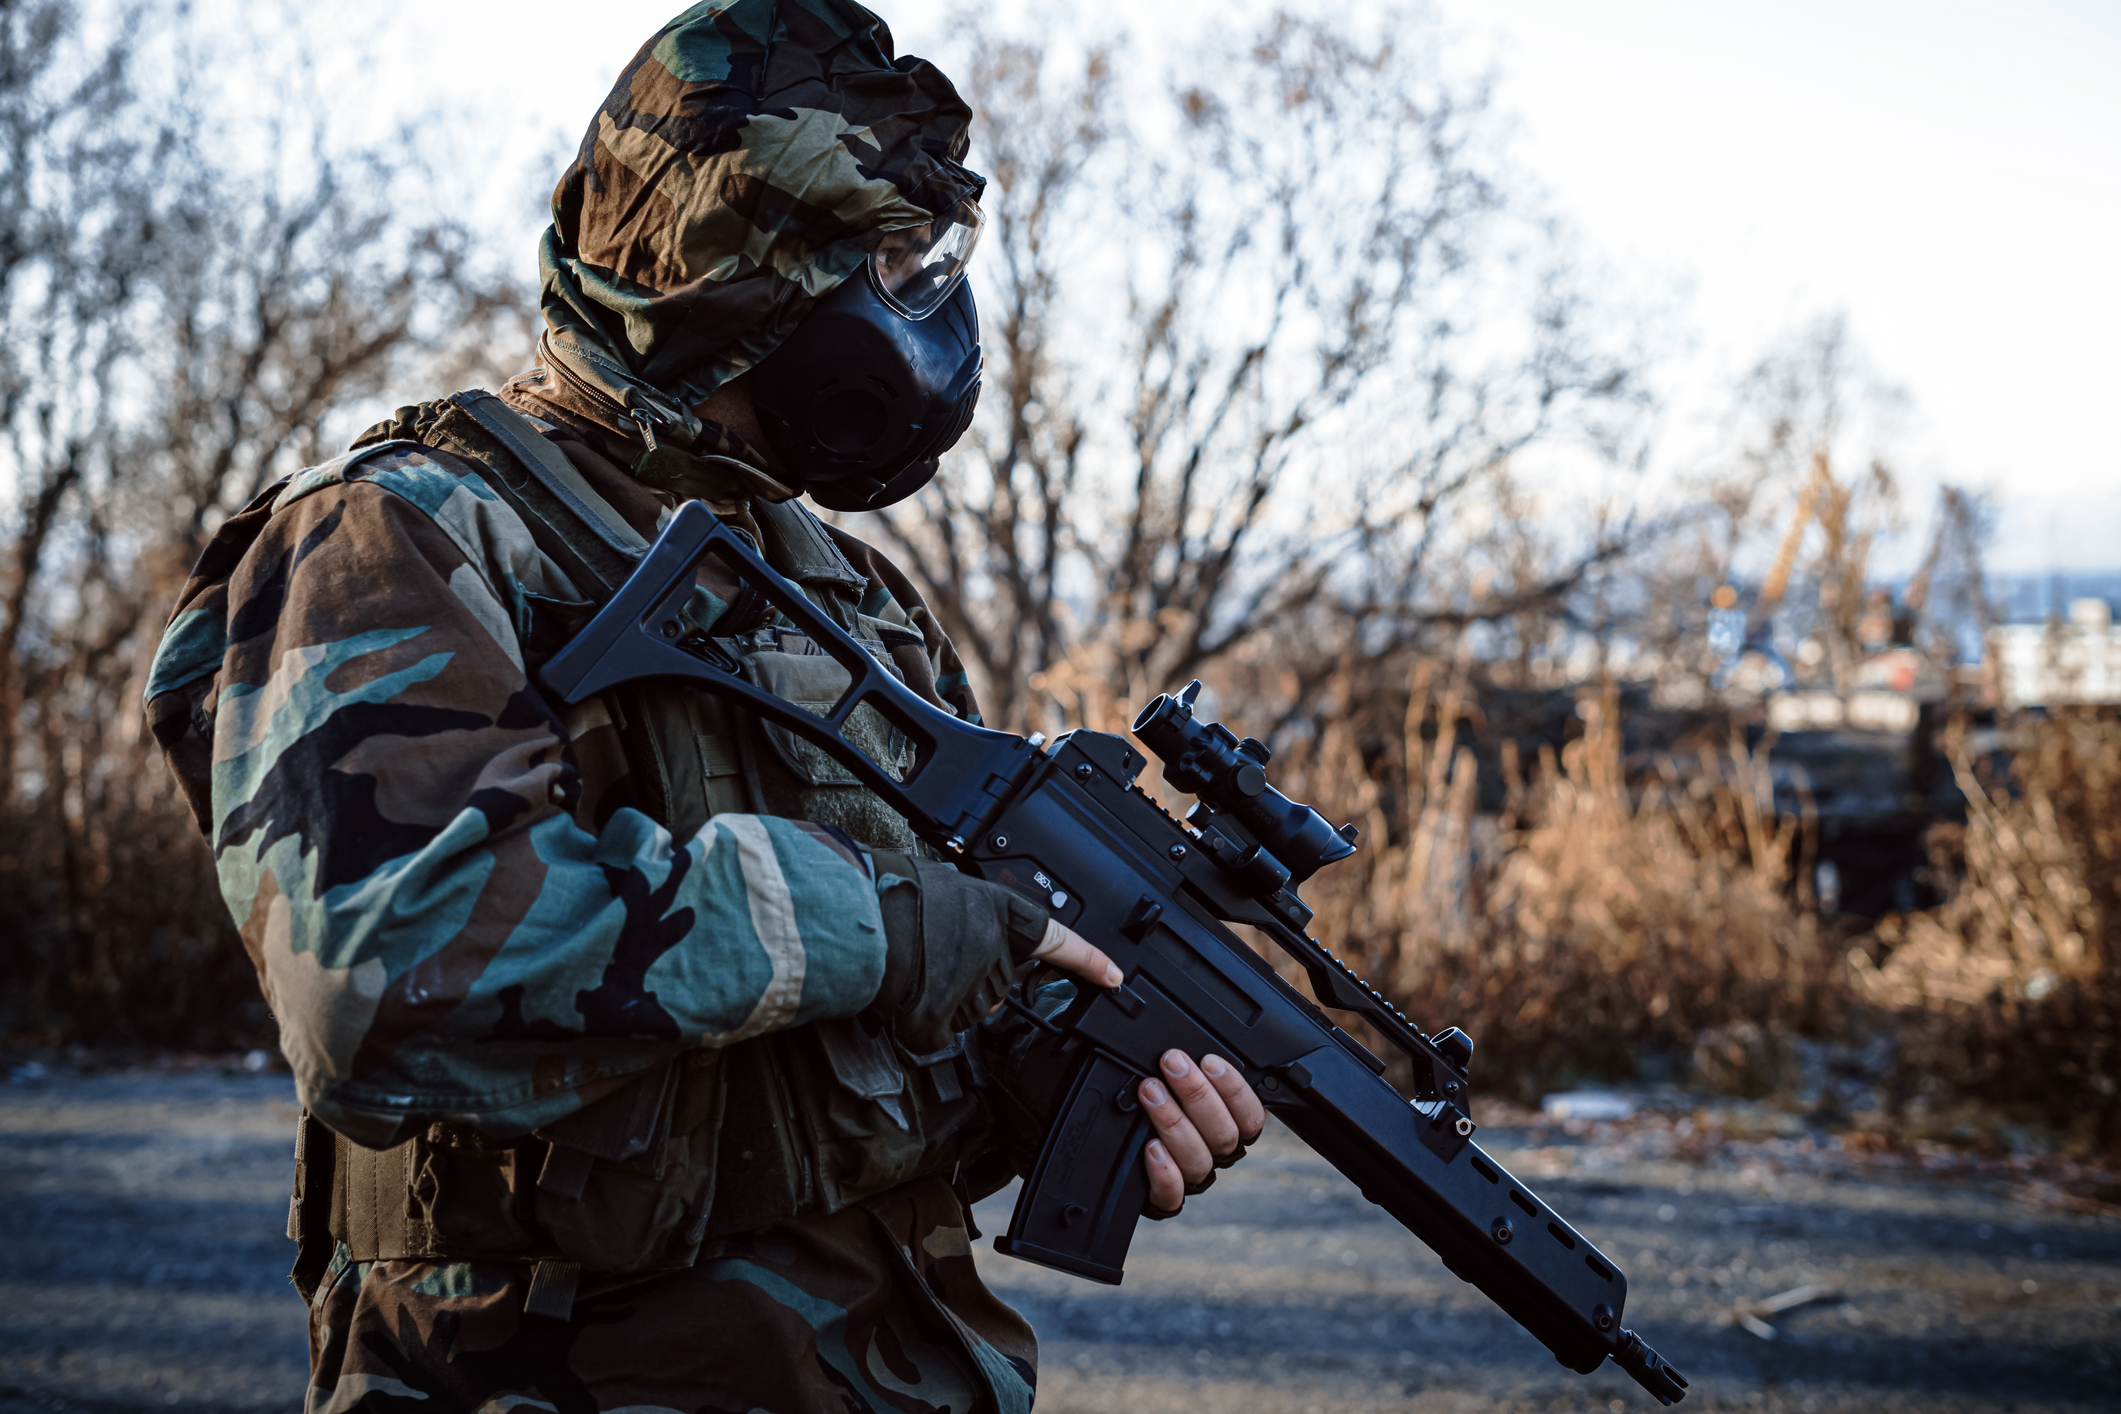 Ce a pățit un soldat după a violat și înjunghiat o tânără din Ucraina - Stirileprotv.ro